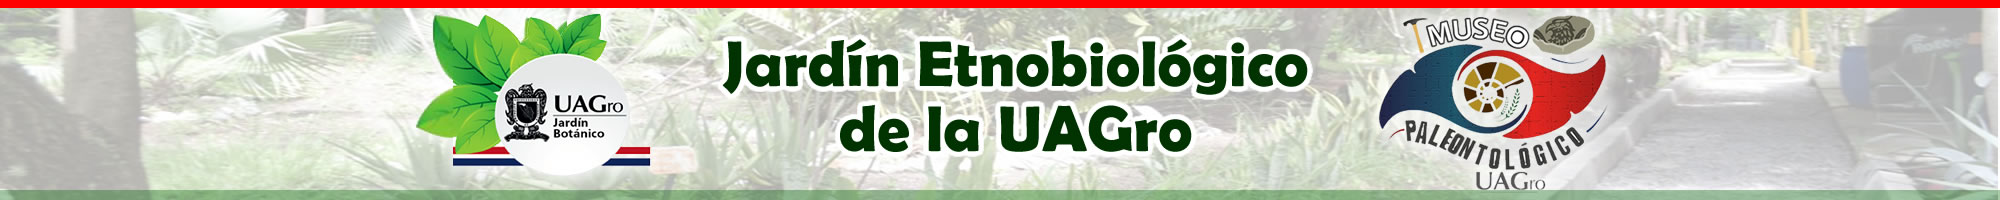 Jardin Etnobiológico de la UAGro